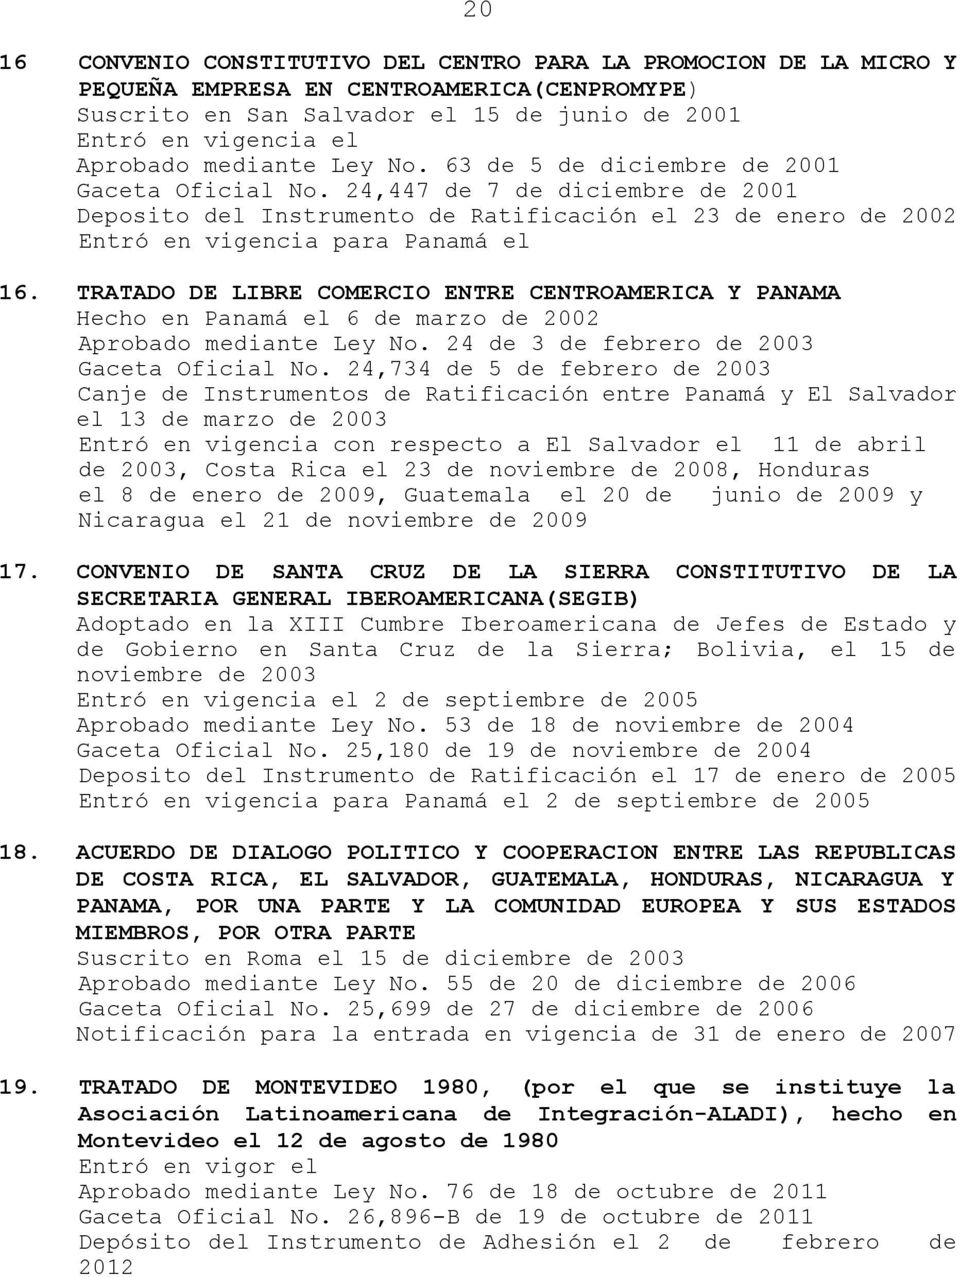 TRATADO DE LIBRE COMERCIO ENTRE CENTROAMERICA Y PANAMA Hecho en Panamá el 6 de marzo de 2002 Aprobado mediante Ley No. 24 de 3 de febrero de 2003 Gaceta Oficial No.